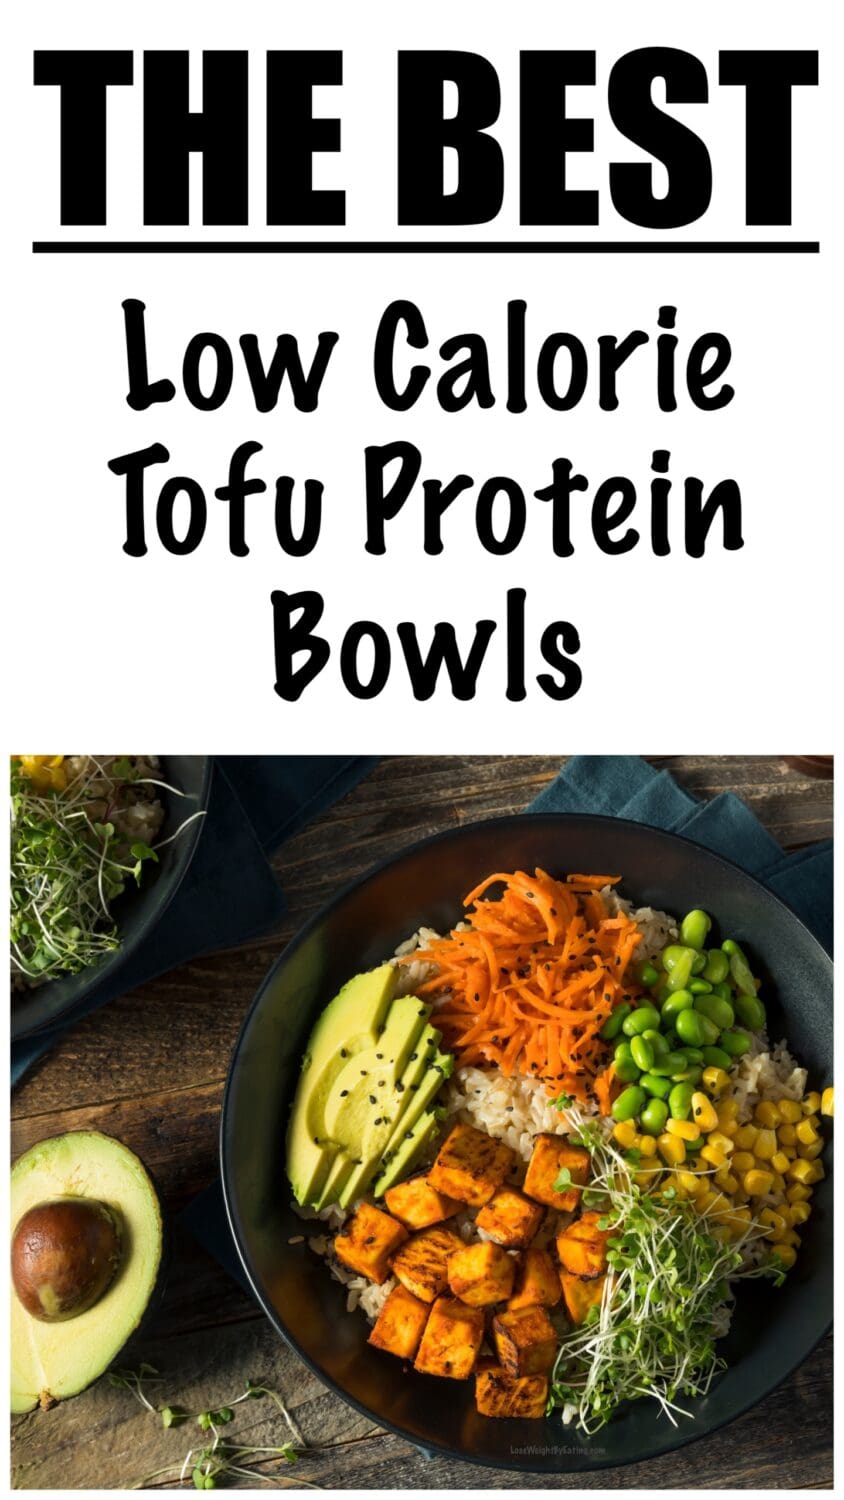 Low Calorie Tofu Bowls